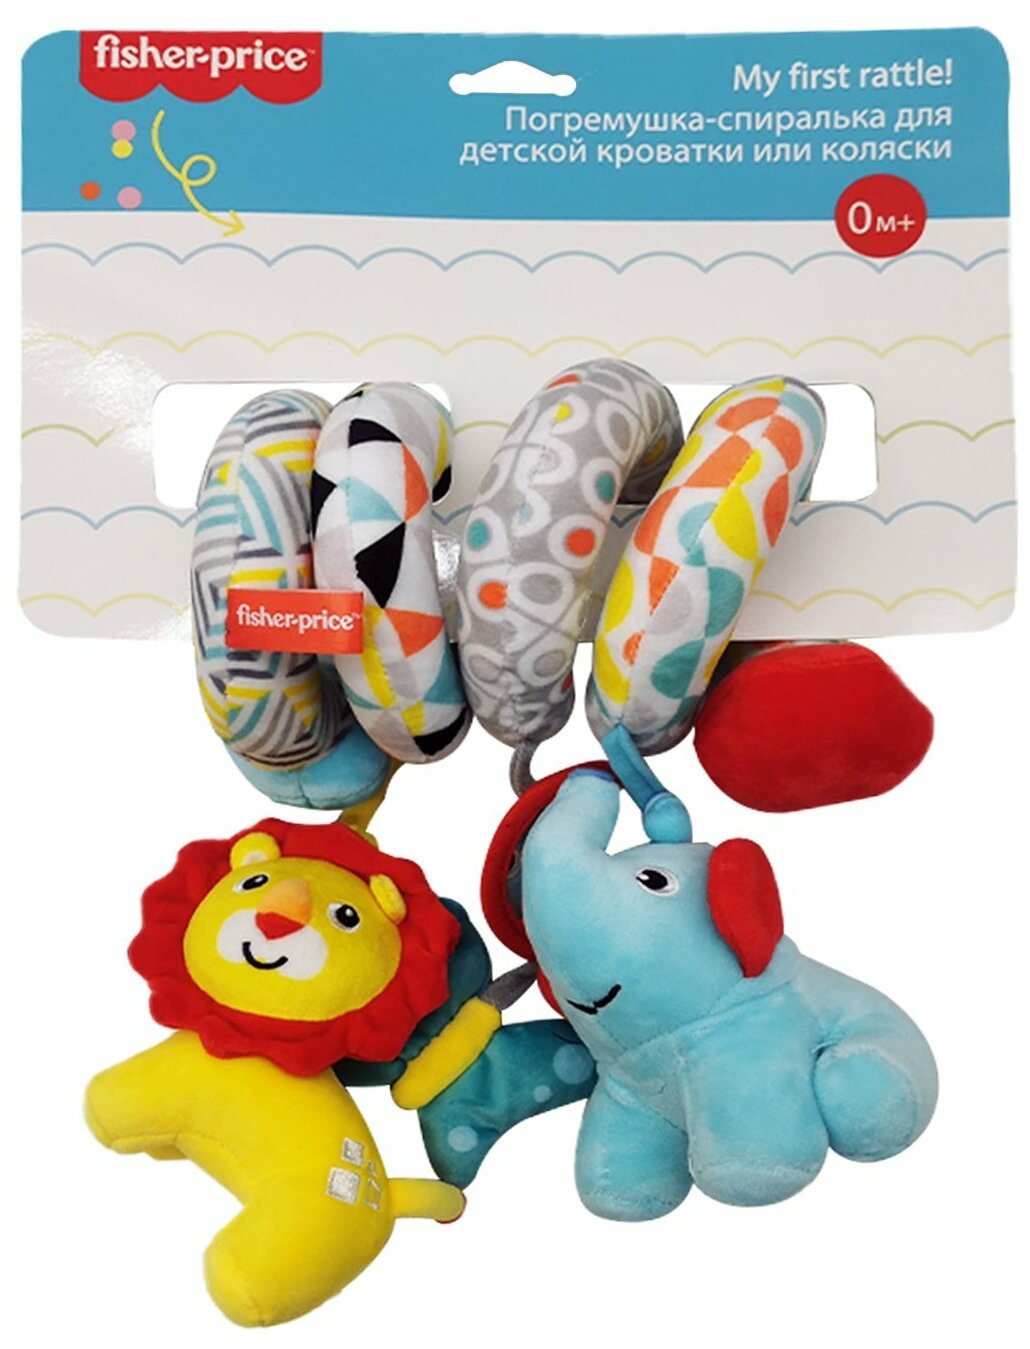 Погремушка-спиралька для детской кроватки или коляски Fisher-Price 3 подвесных игрушки Слоненок Бабочка Львенок, 0+, F1016